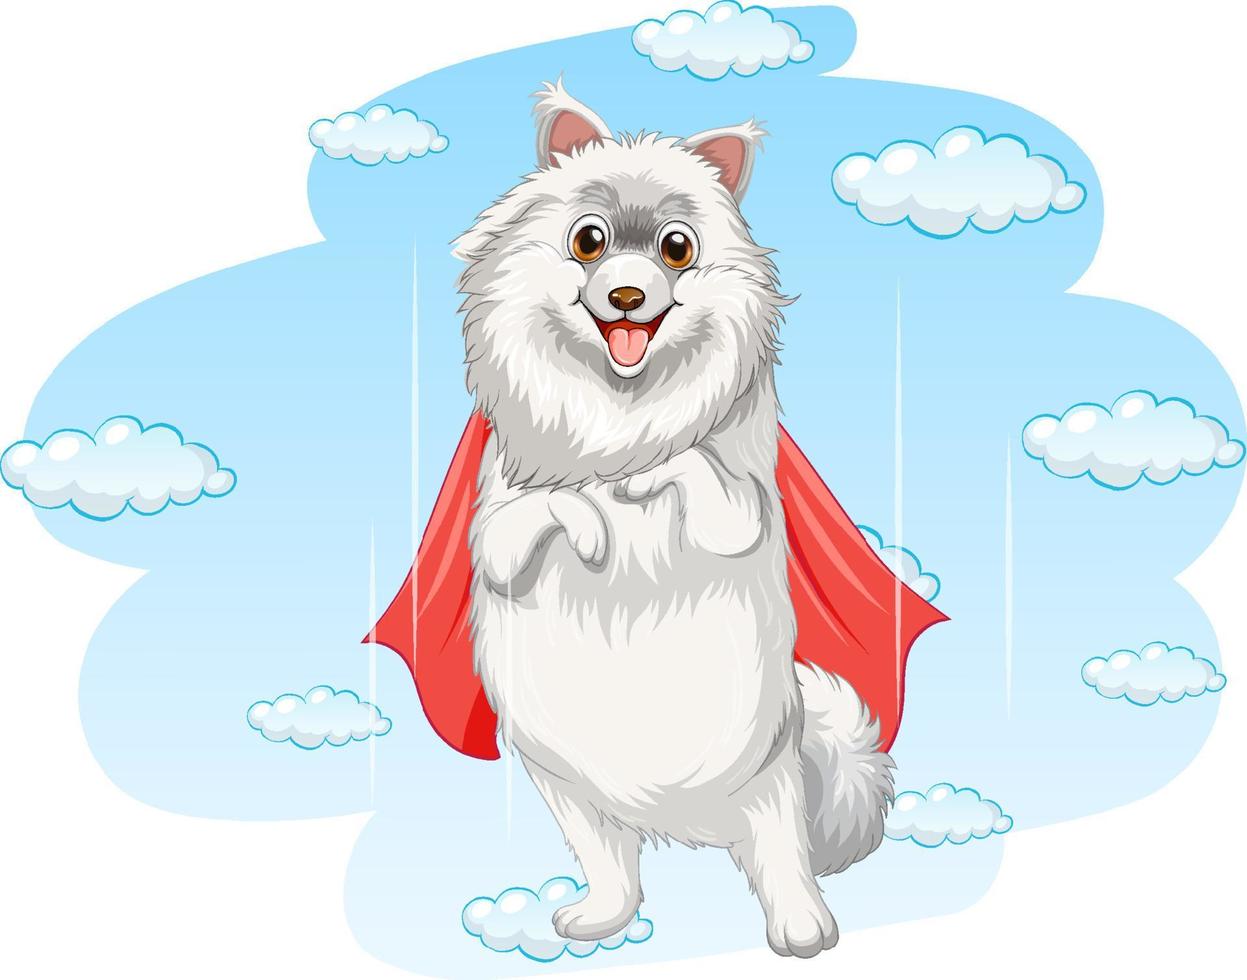 A dog superhero on sky background vector